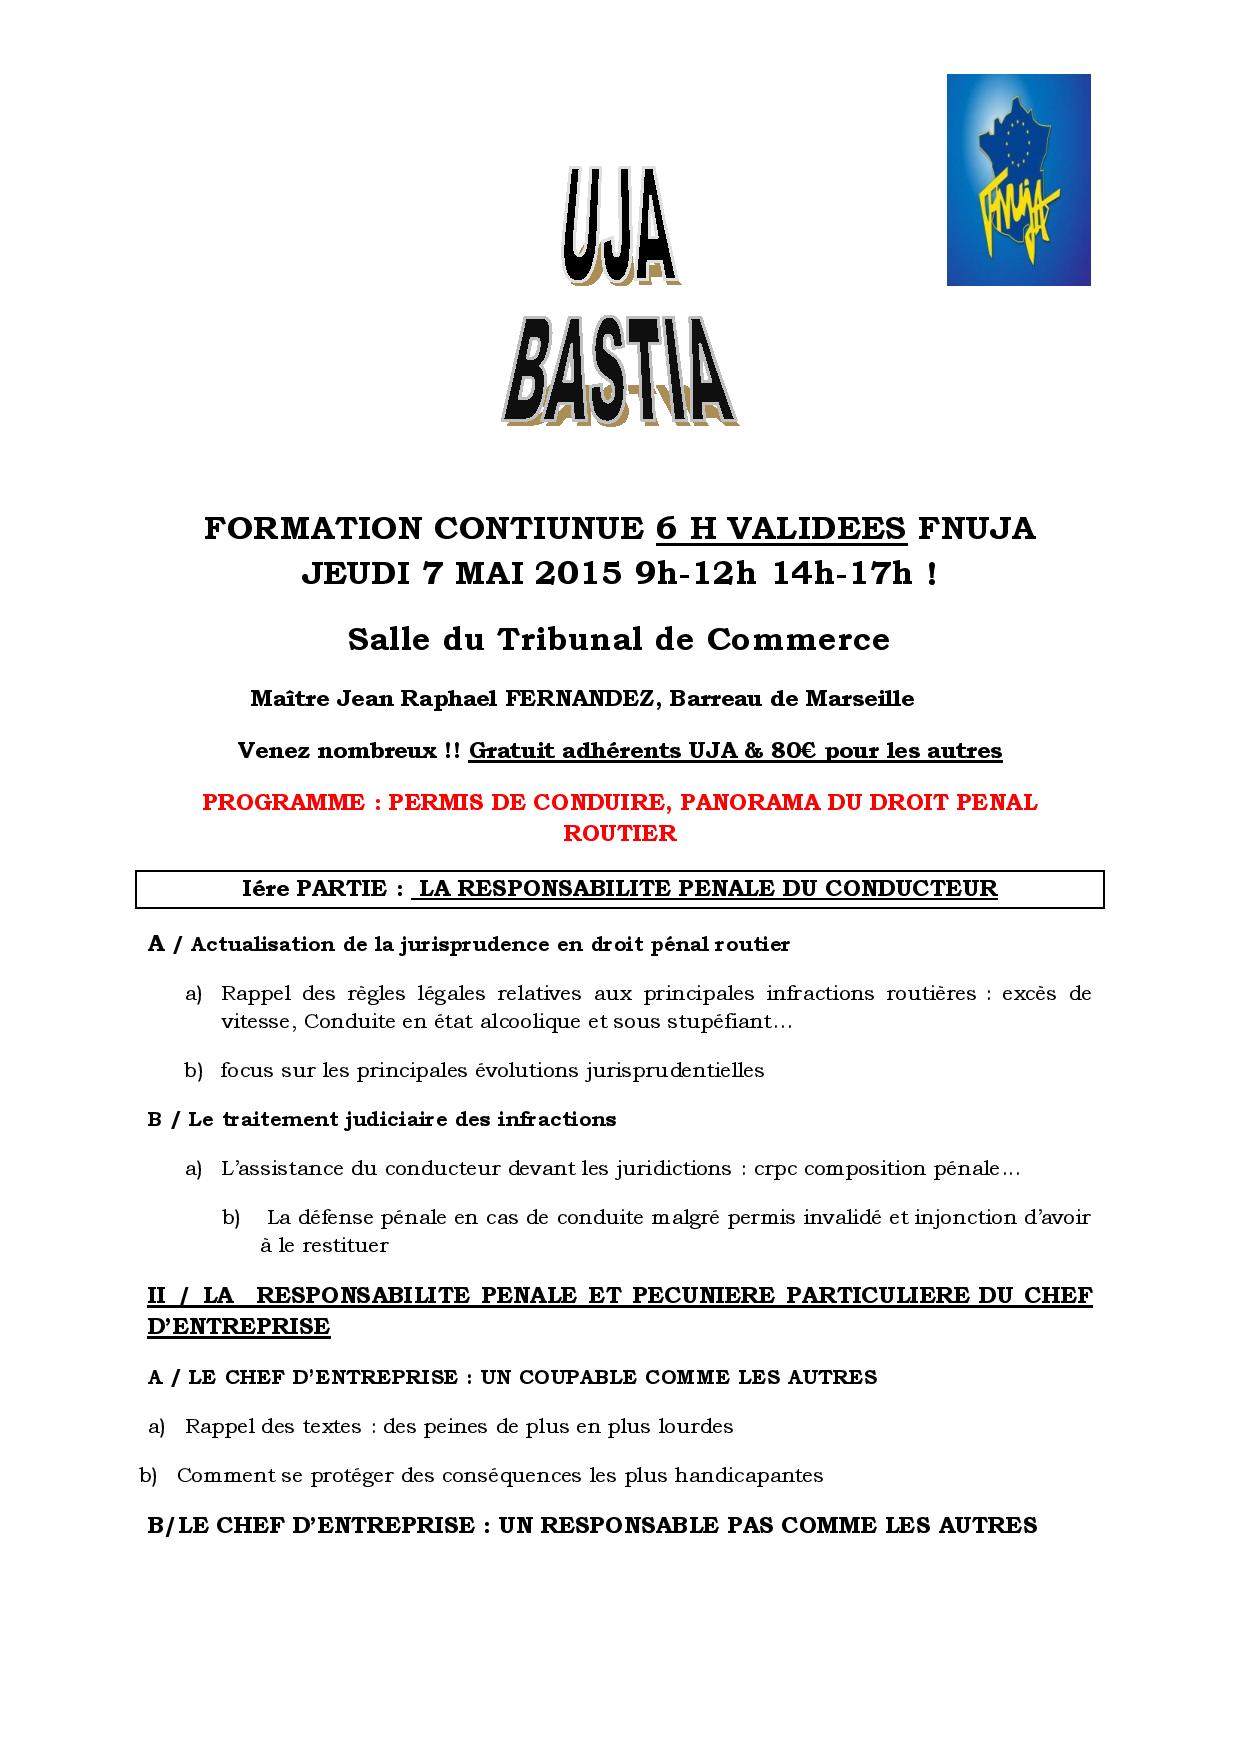 BASTIA -  FORMATION: PERMIS DE CONDUIRE, PANORAMA DU DROIT PENAL ROUTIER